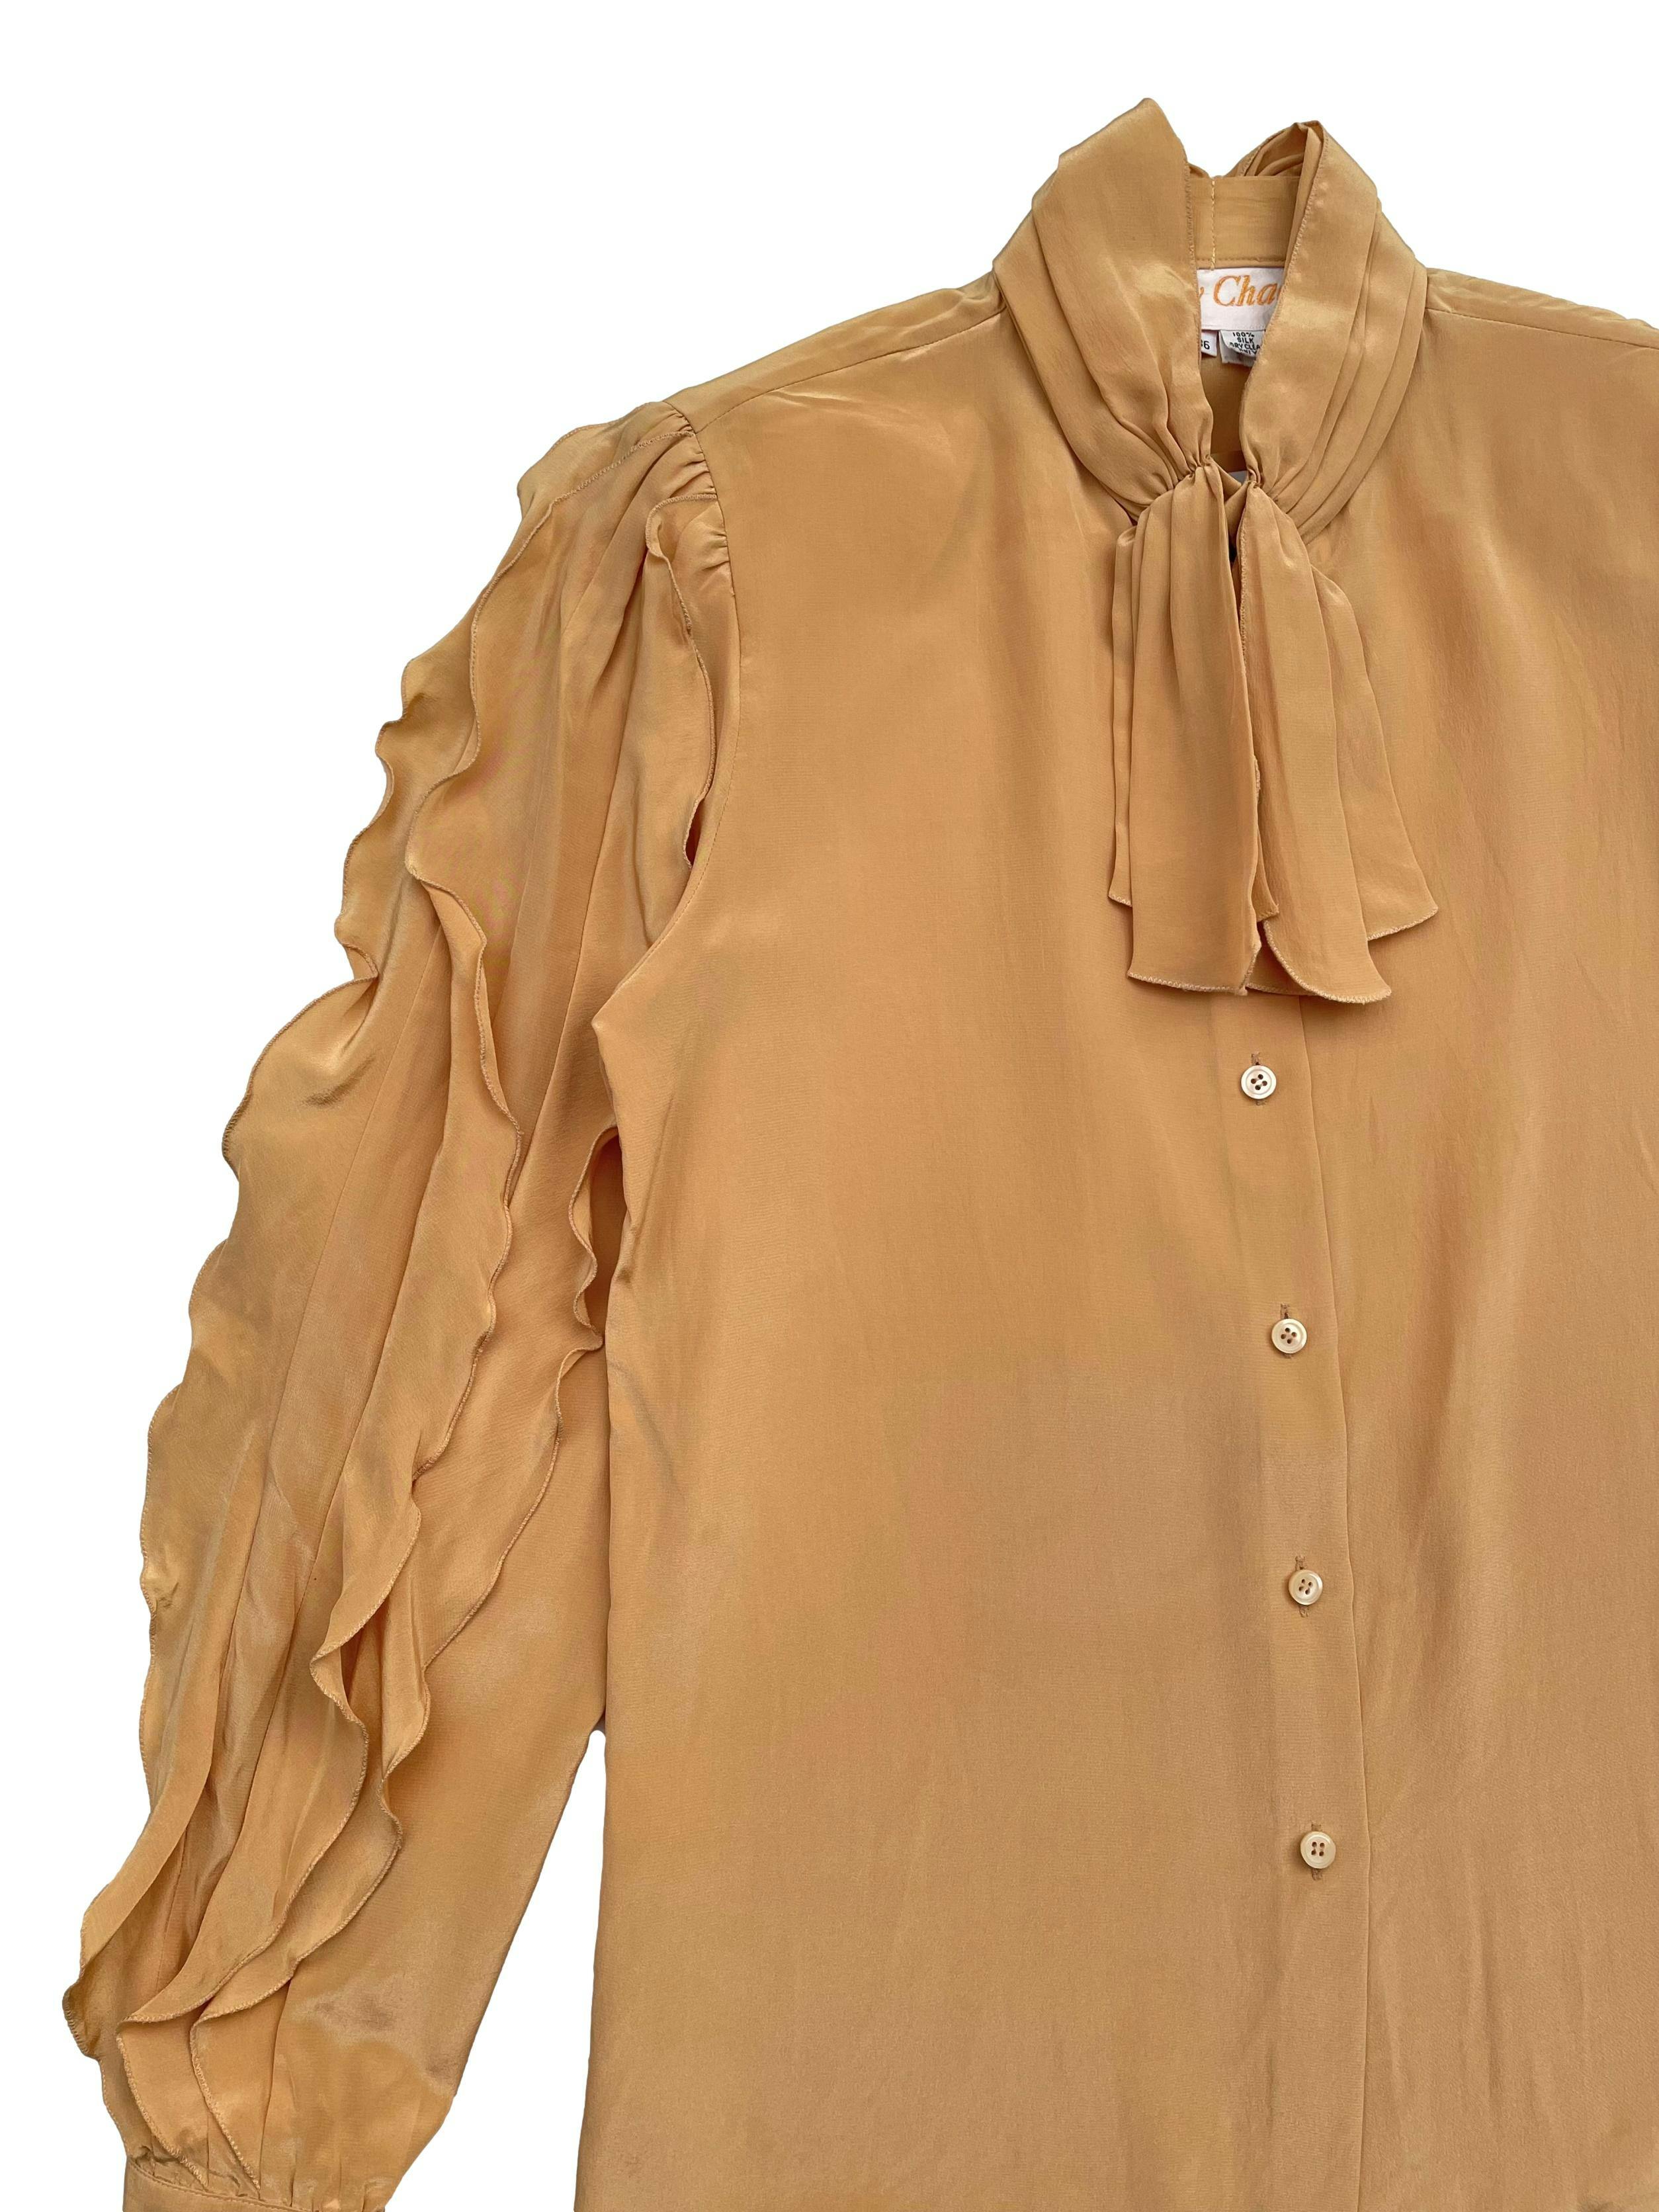 Blusa vintage 100% seda en color maíz, cuello drapeado con lazo, mangas con volantes y hombreras. Hombros 35 cm, Largo 60cm.